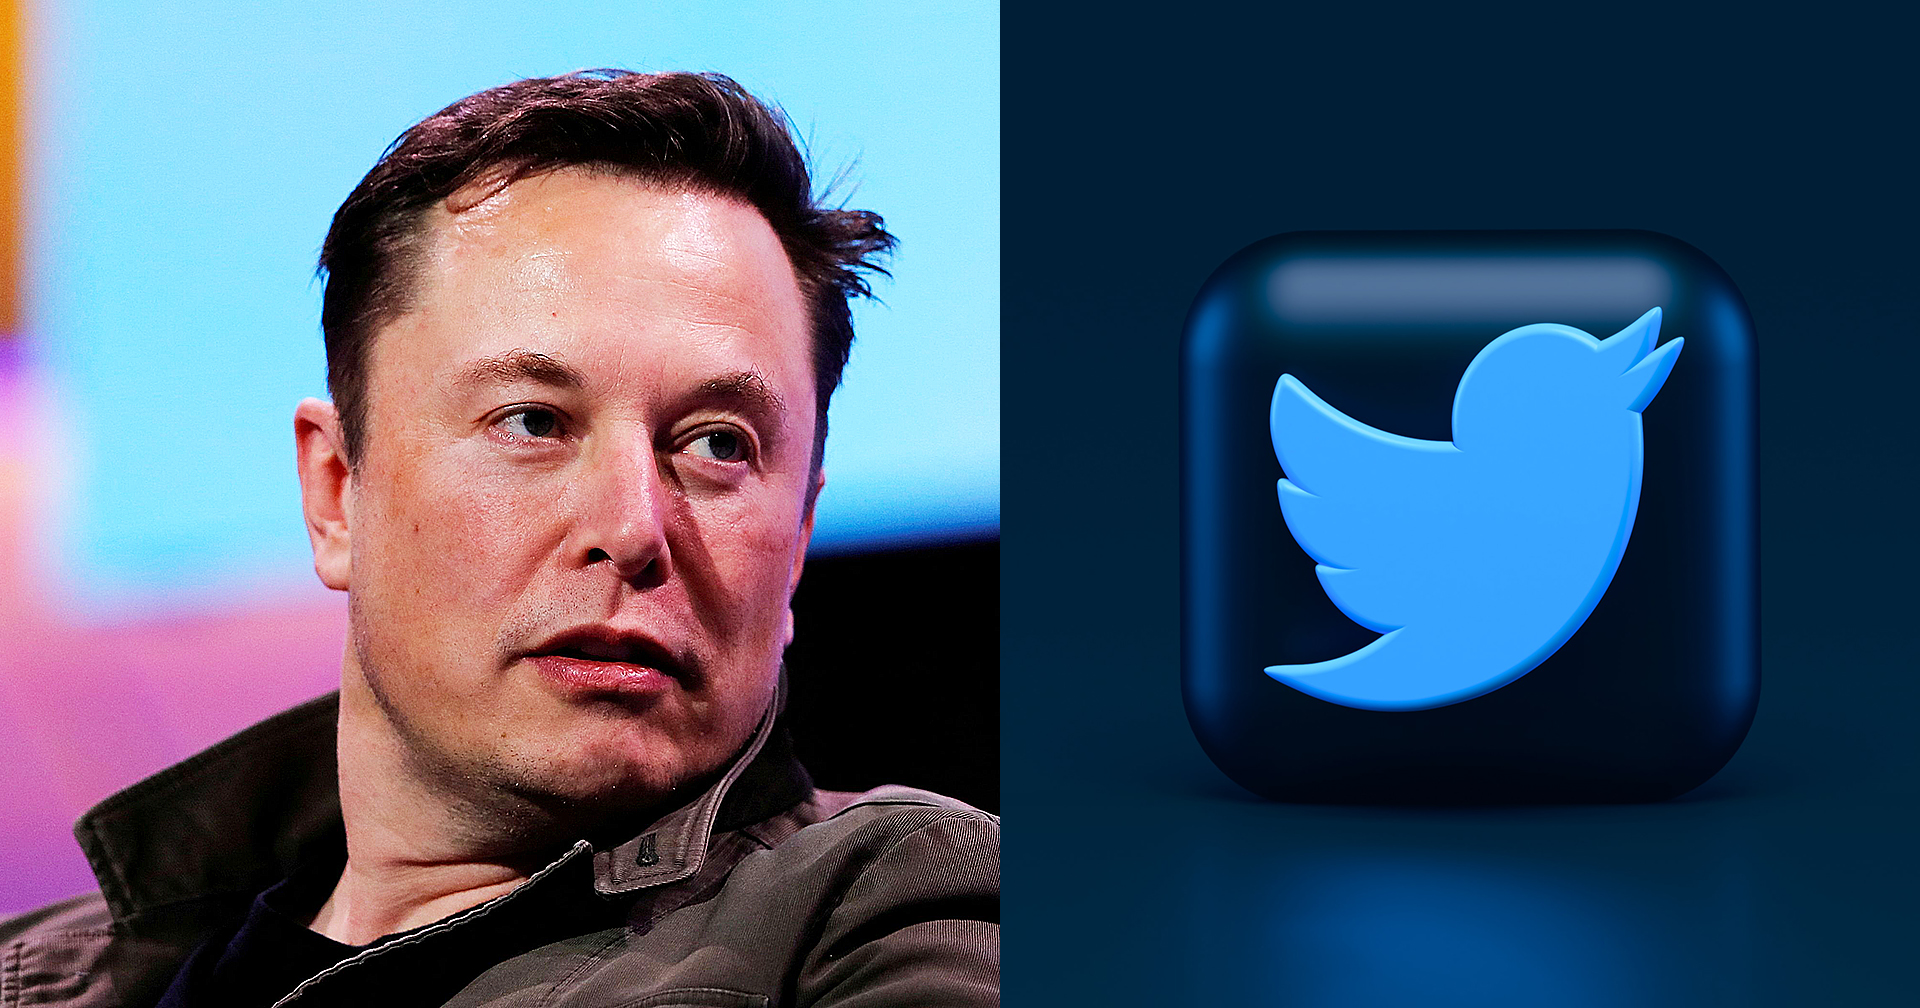 Elon Musk โชว์ศักยภาพ: สั่งปรับหน้าโฮมเพจ Twitter ทันทีที่เข้าที่ควบคุมบริษัท